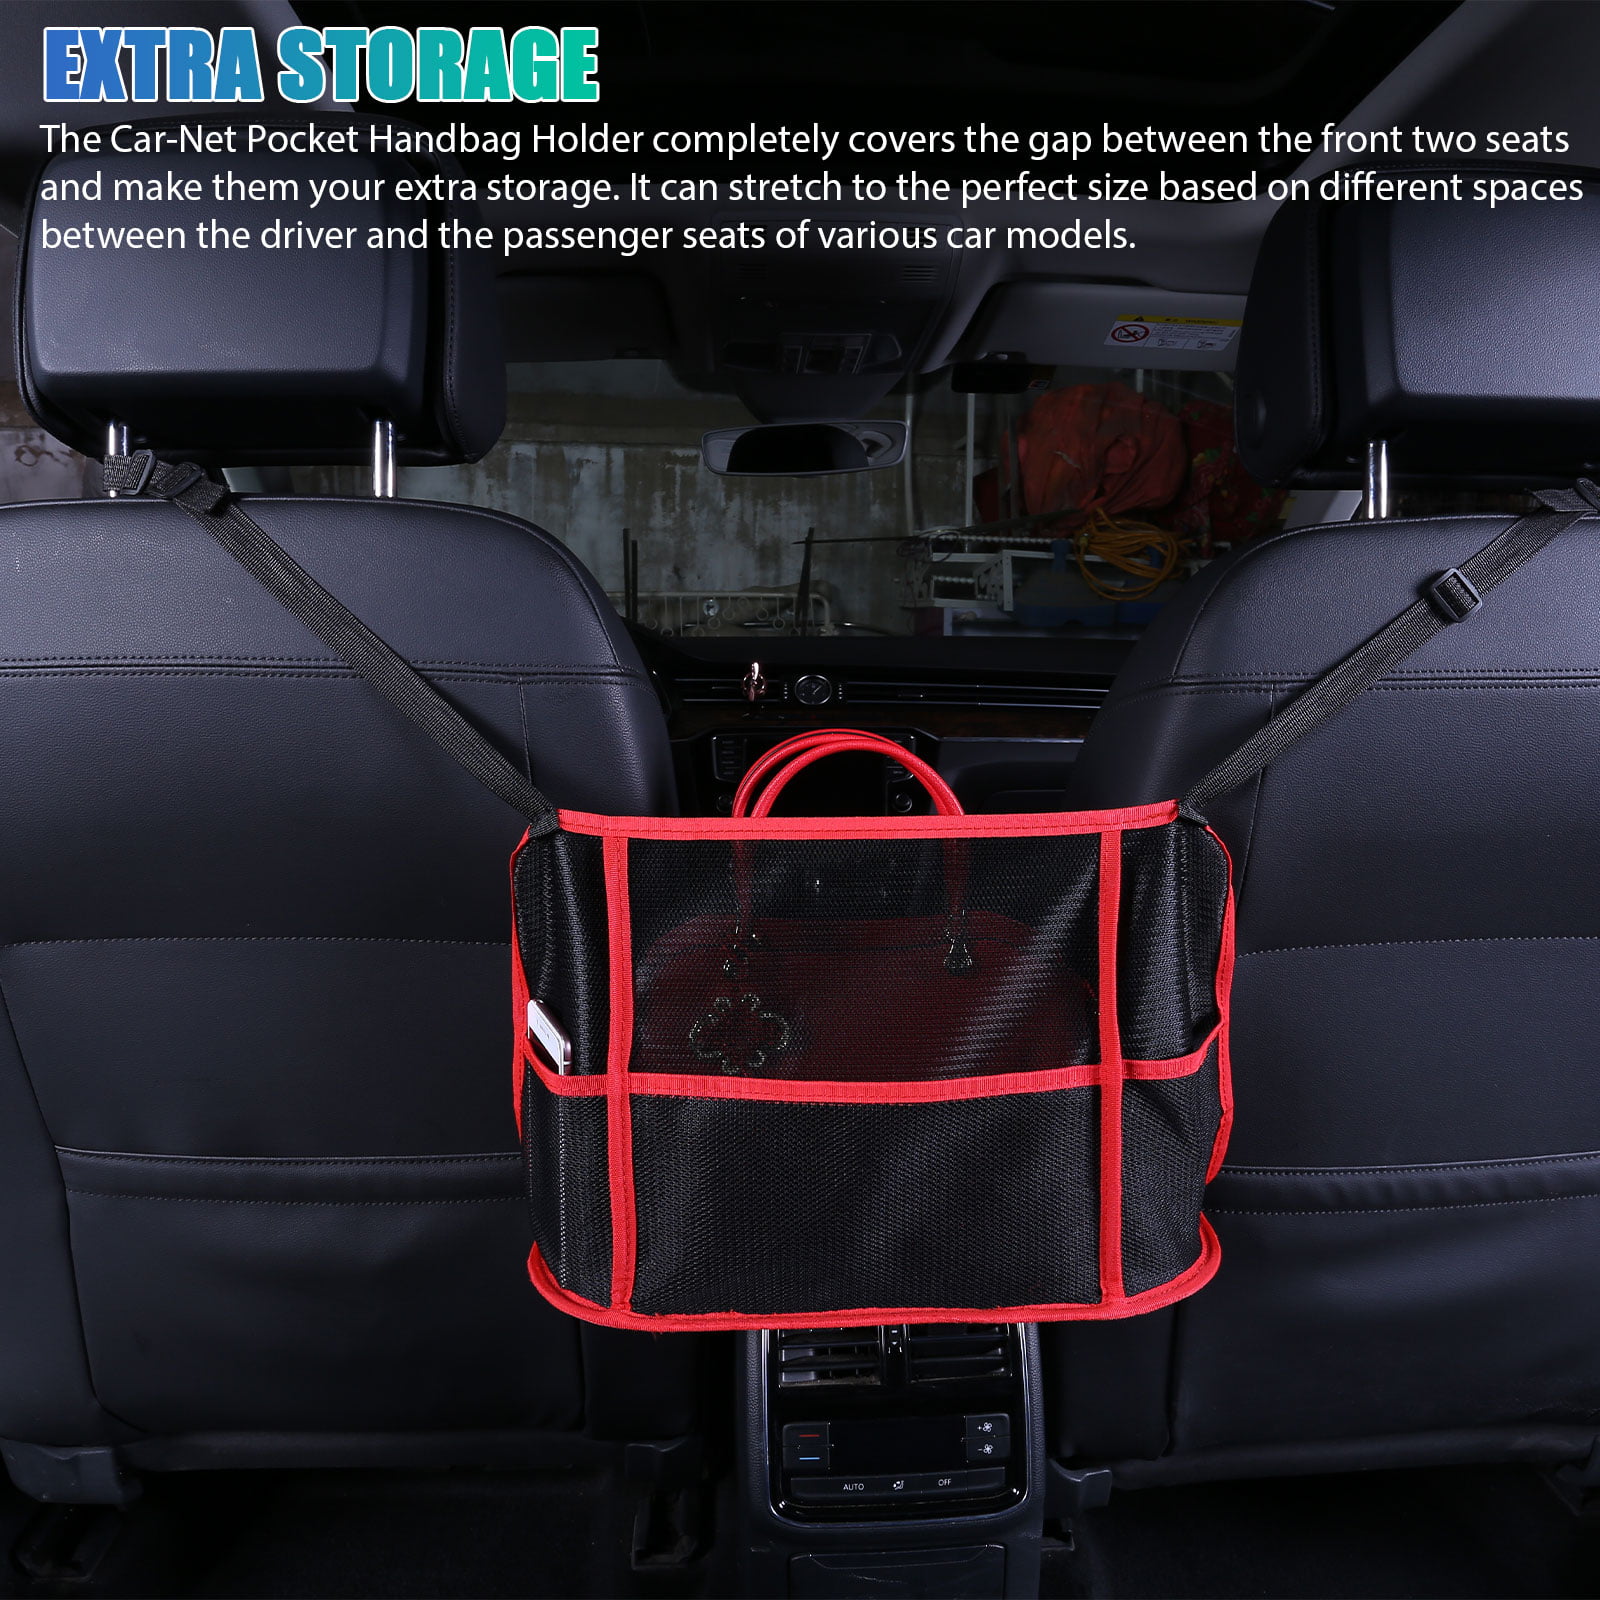 Meltset M 4Pcs Car Storage Net, Black Seat Side Back Storage Net Bag,  Universal Car Interior Accessories for Trunk Holder Pocket Organizer for  Phones